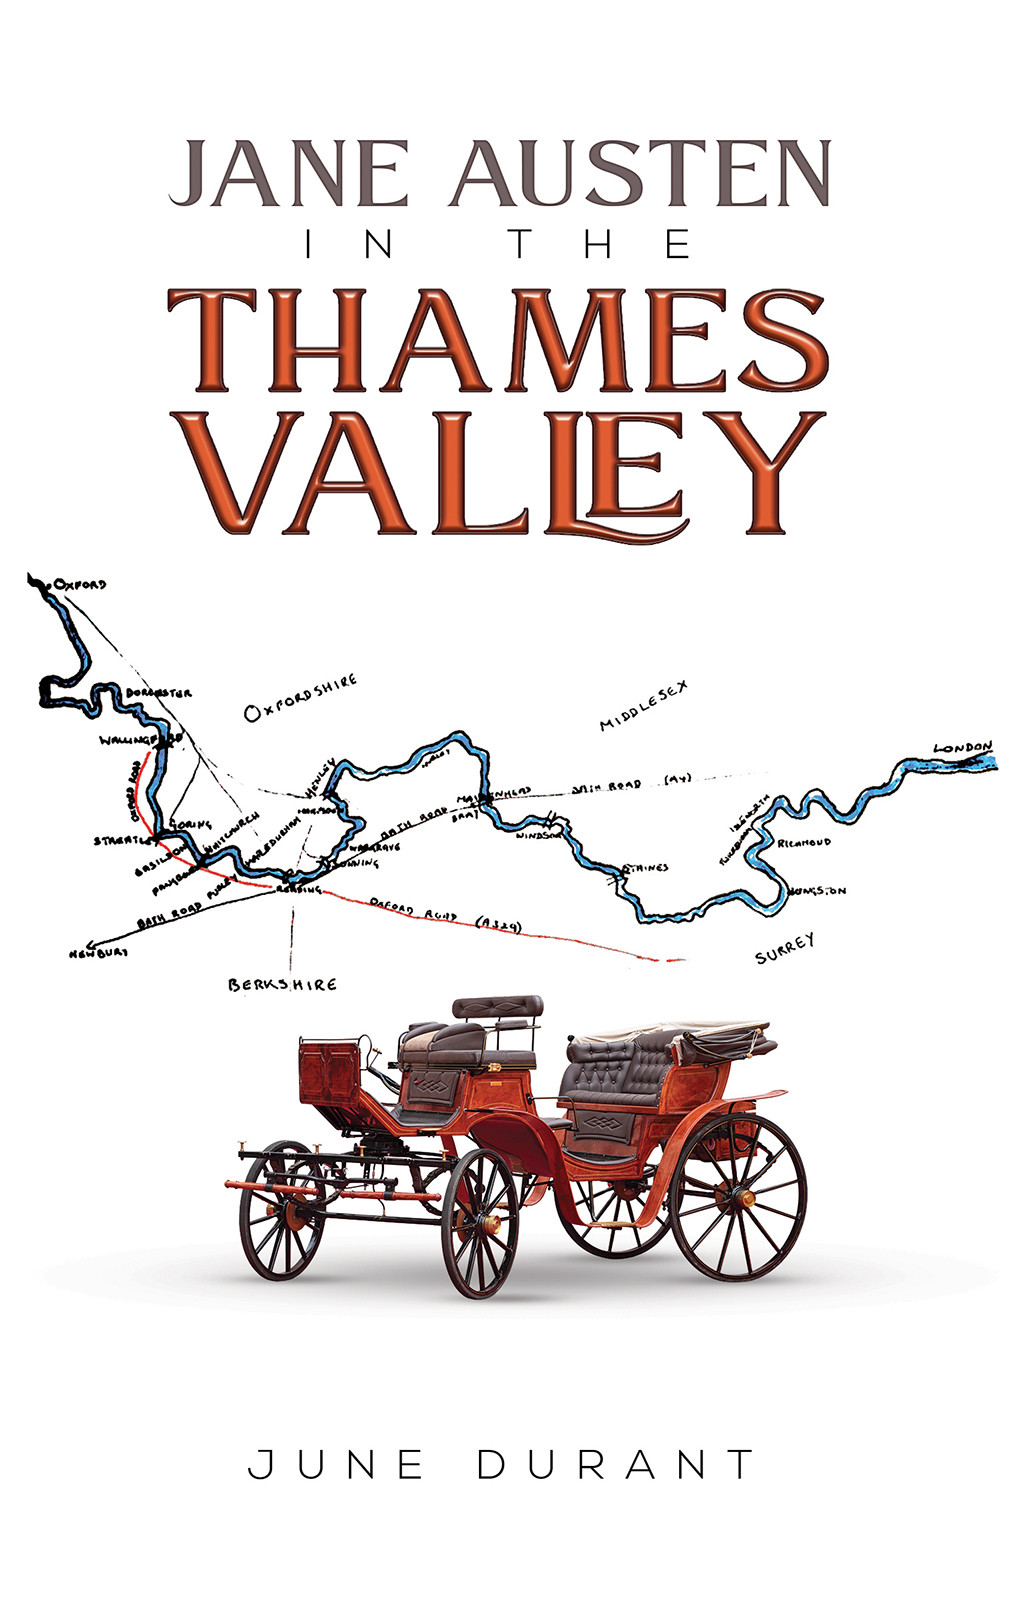 Jane Austen in the Thames Valley